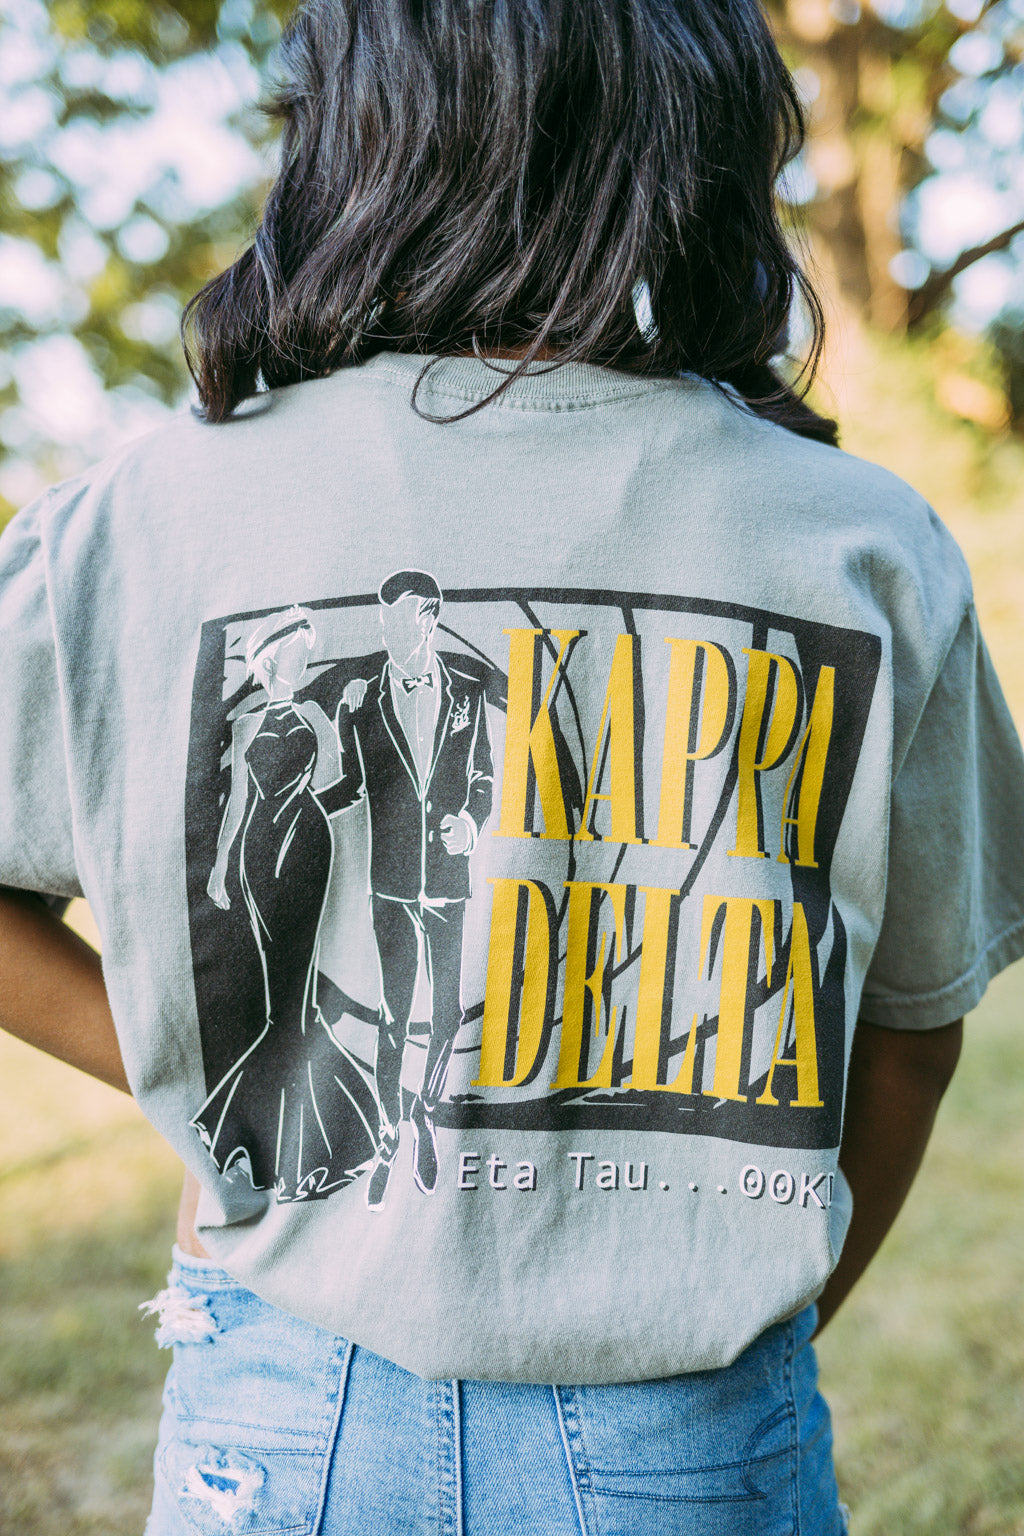 Kappa Delta 00KD Formal Tshirt